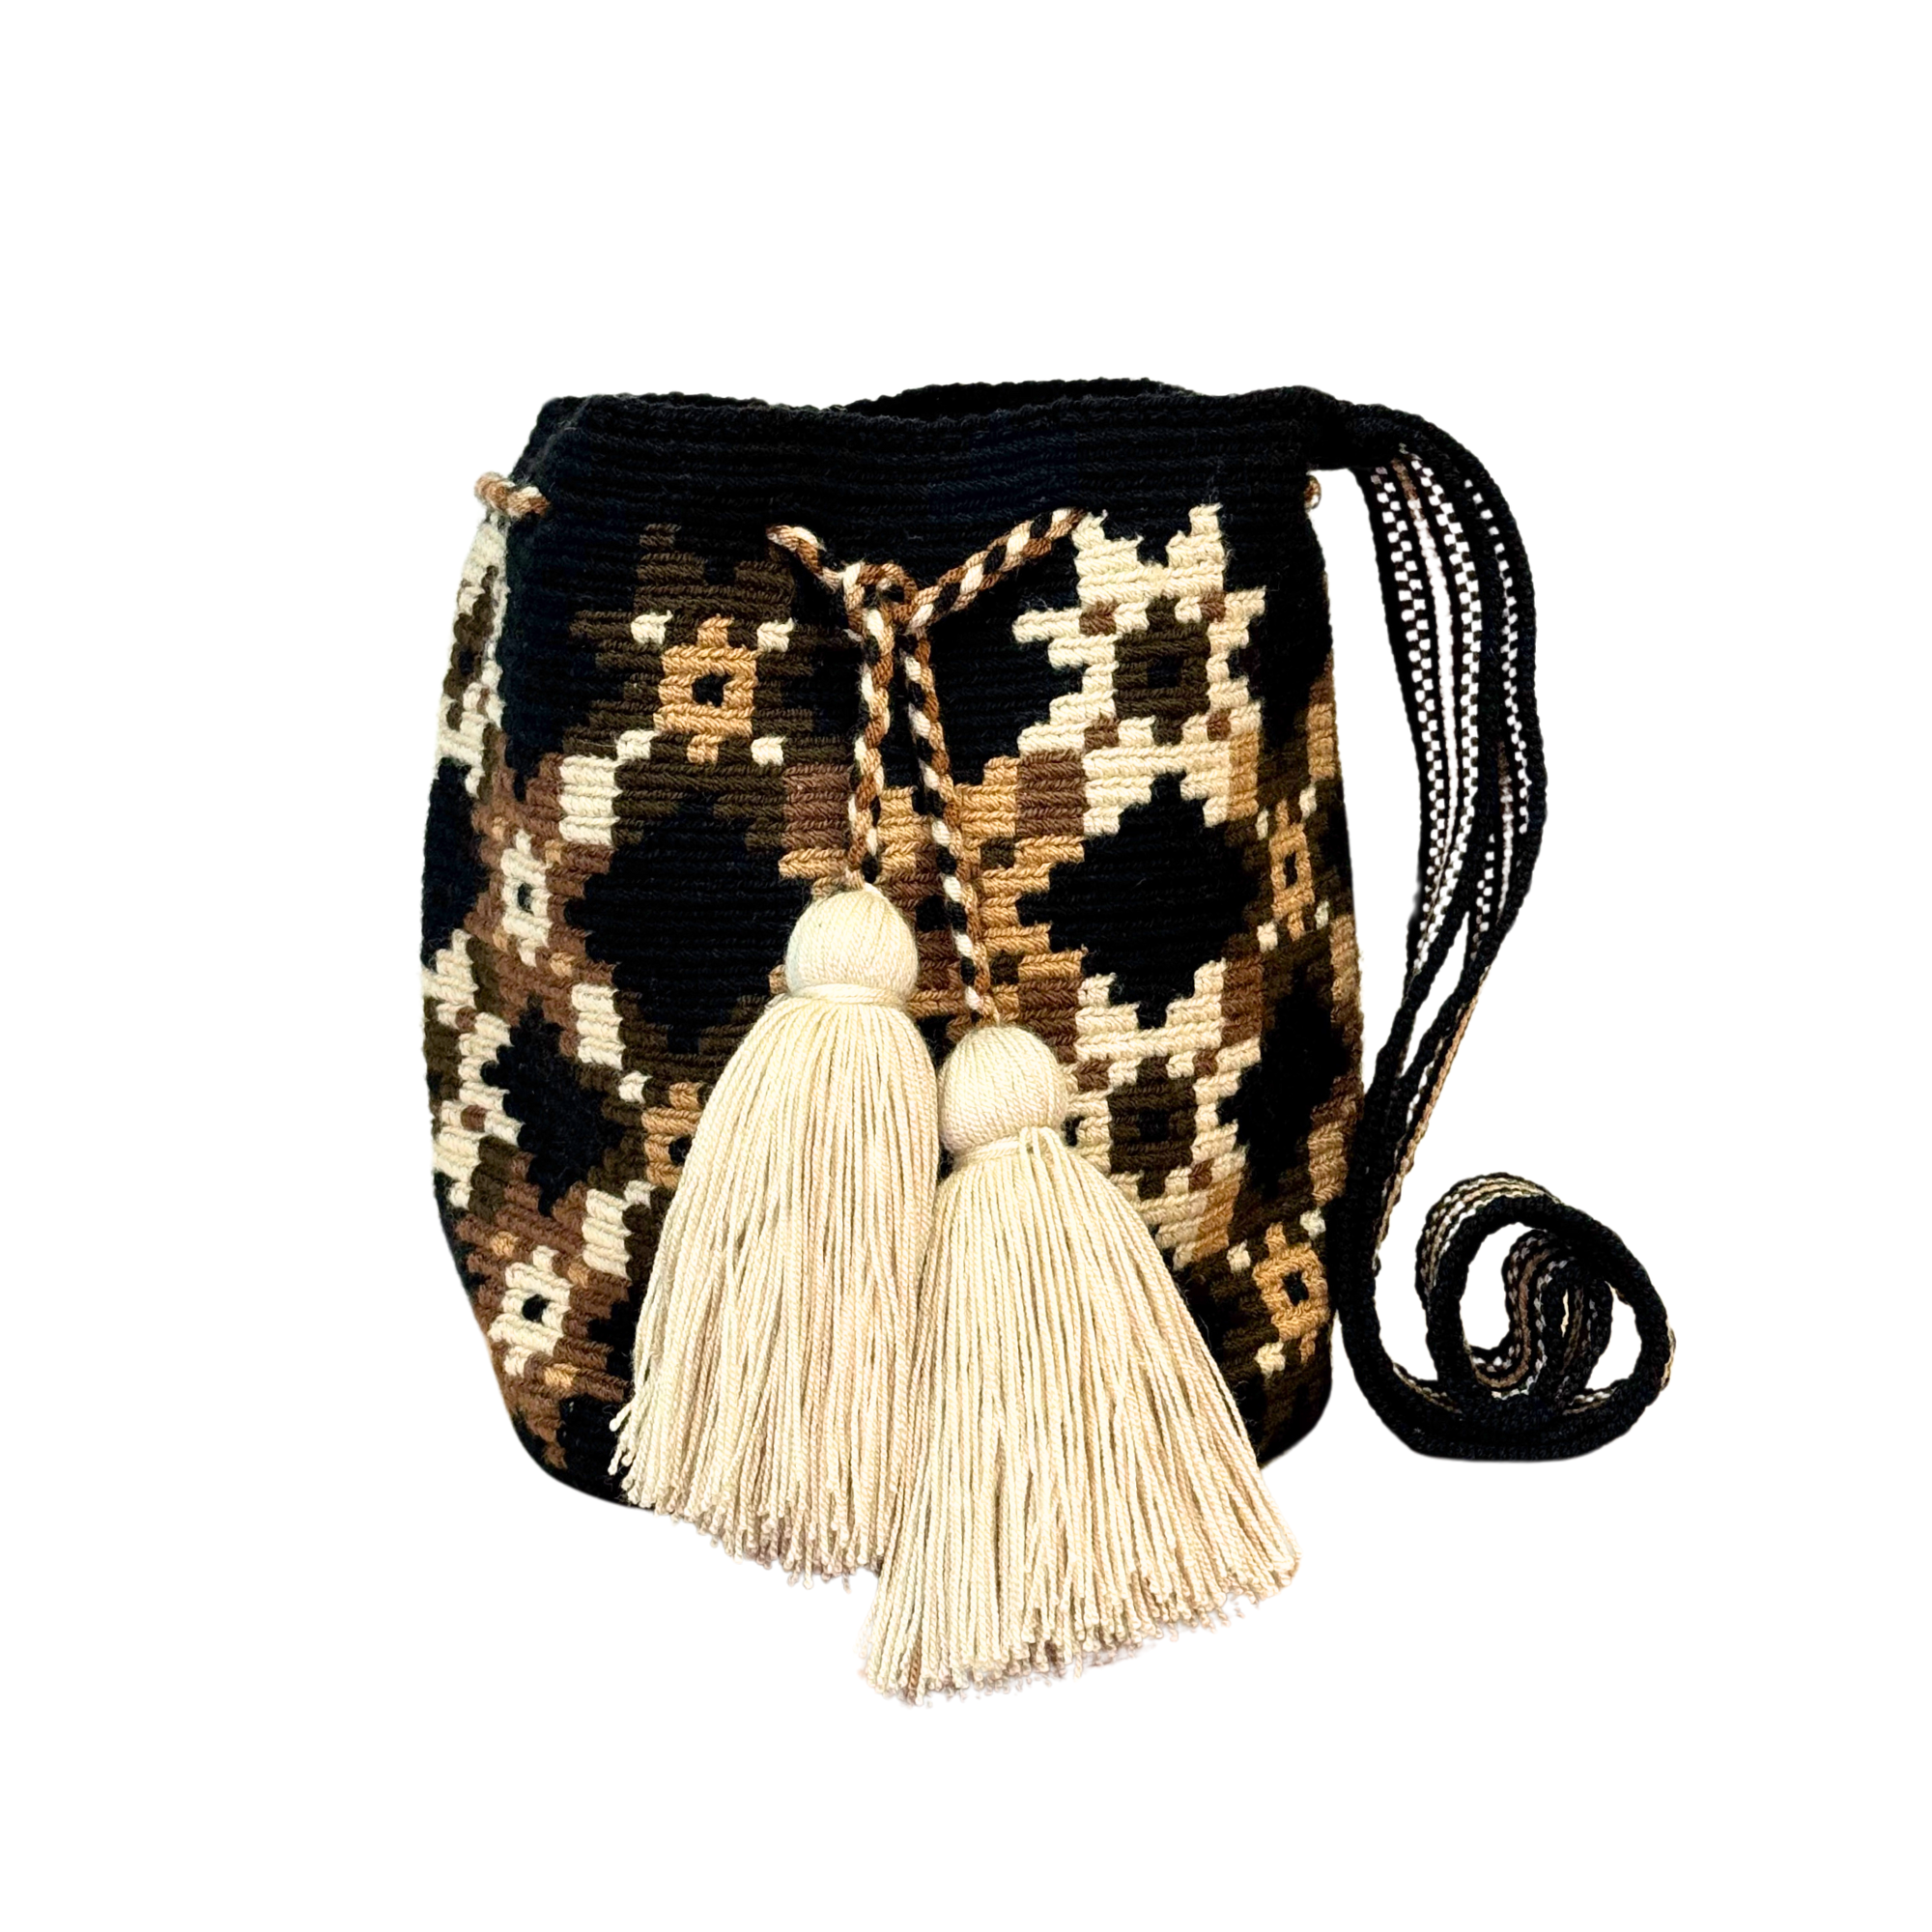 Wayuu mochila bag | Medium Traditional | Solid Strap | Black and brown in X